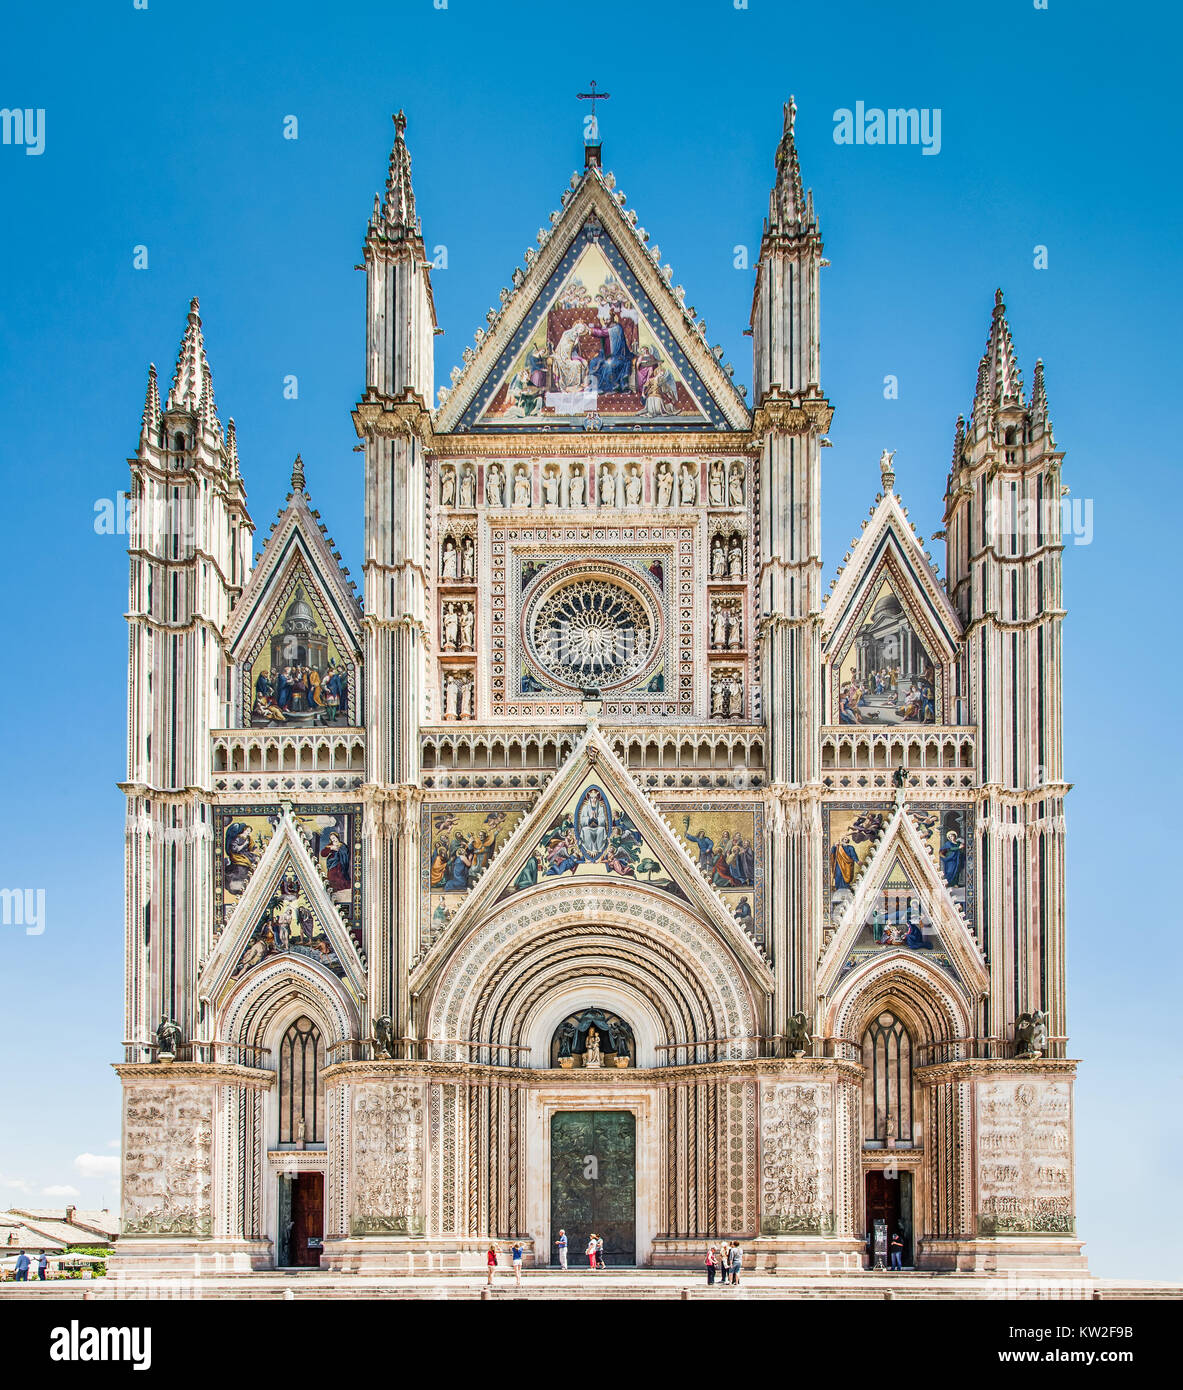 Vista panoramica del Duomo di Orvieto (Duomo di Orvieto), Umbria, Italia Foto Stock